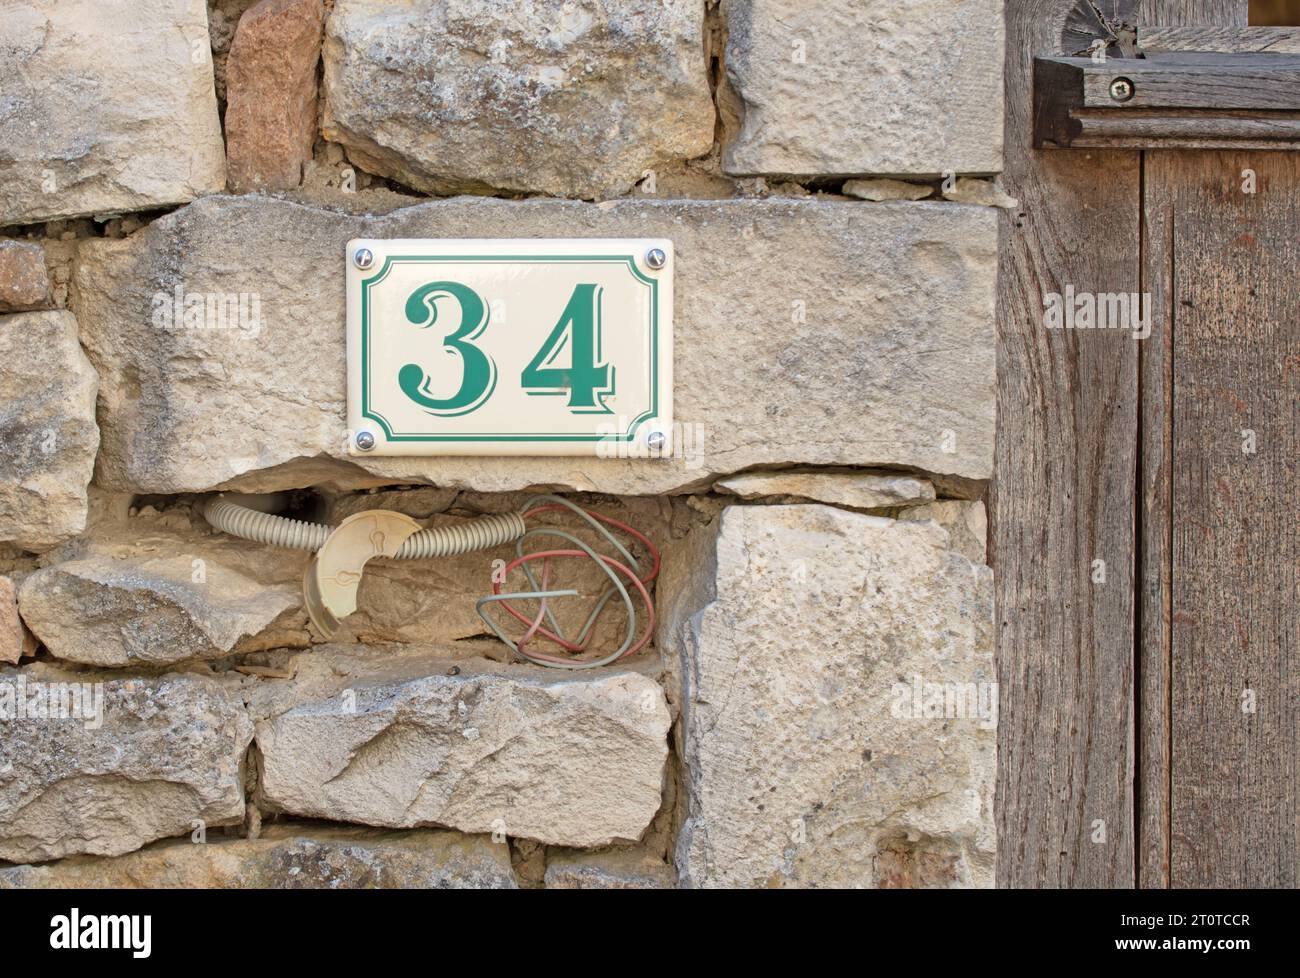 Mur de pierre près d'une porte, entrée au numéro 34, France Banque D'Images